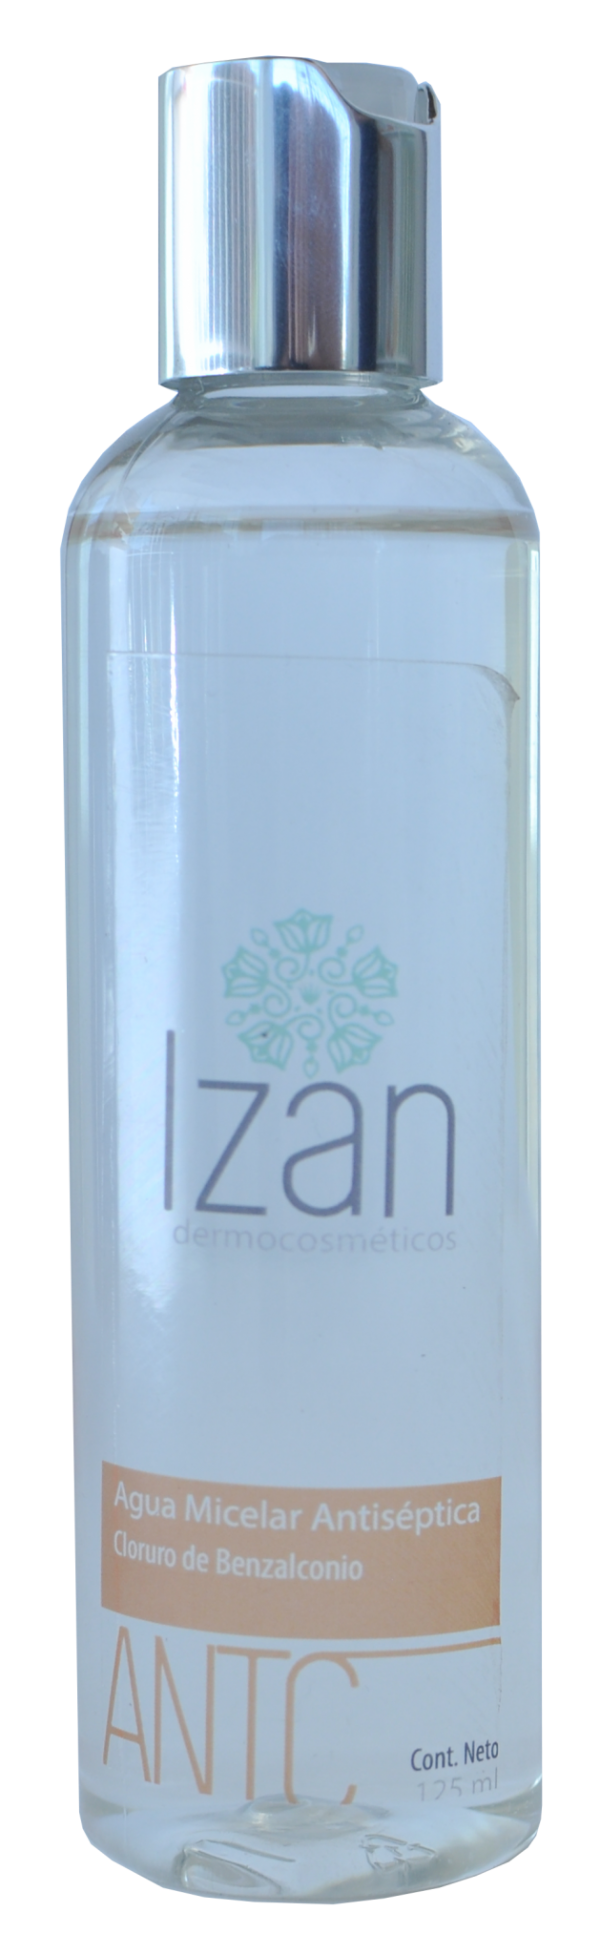 Agua micelar antiseptica IZAN Dermocosméticos